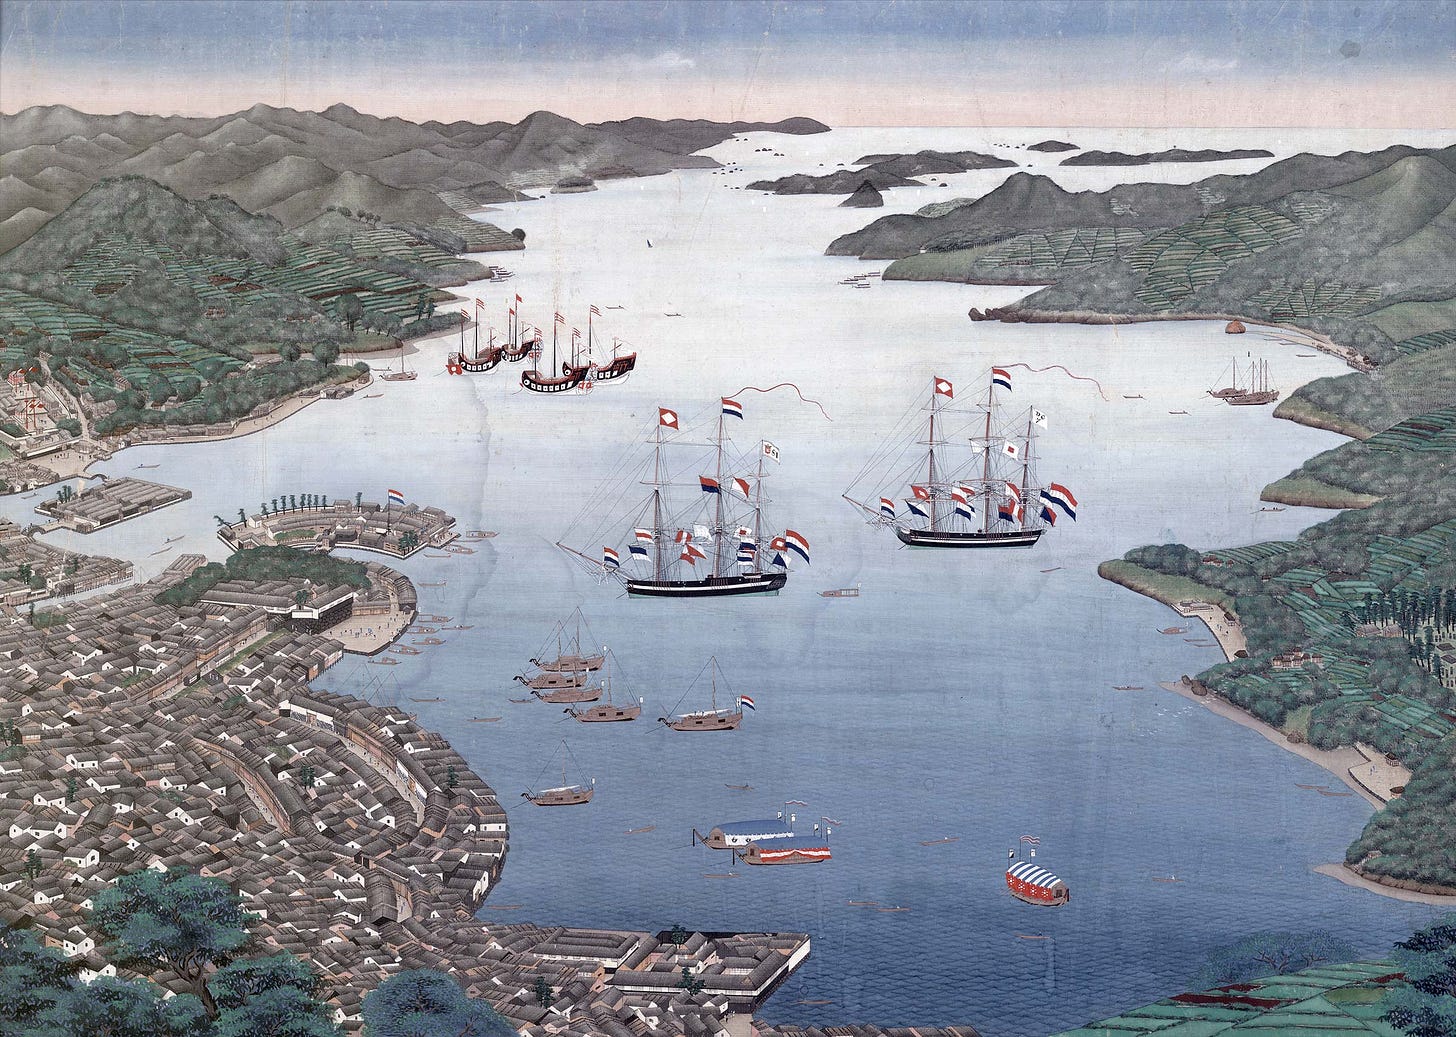 Nagasaki in 1825